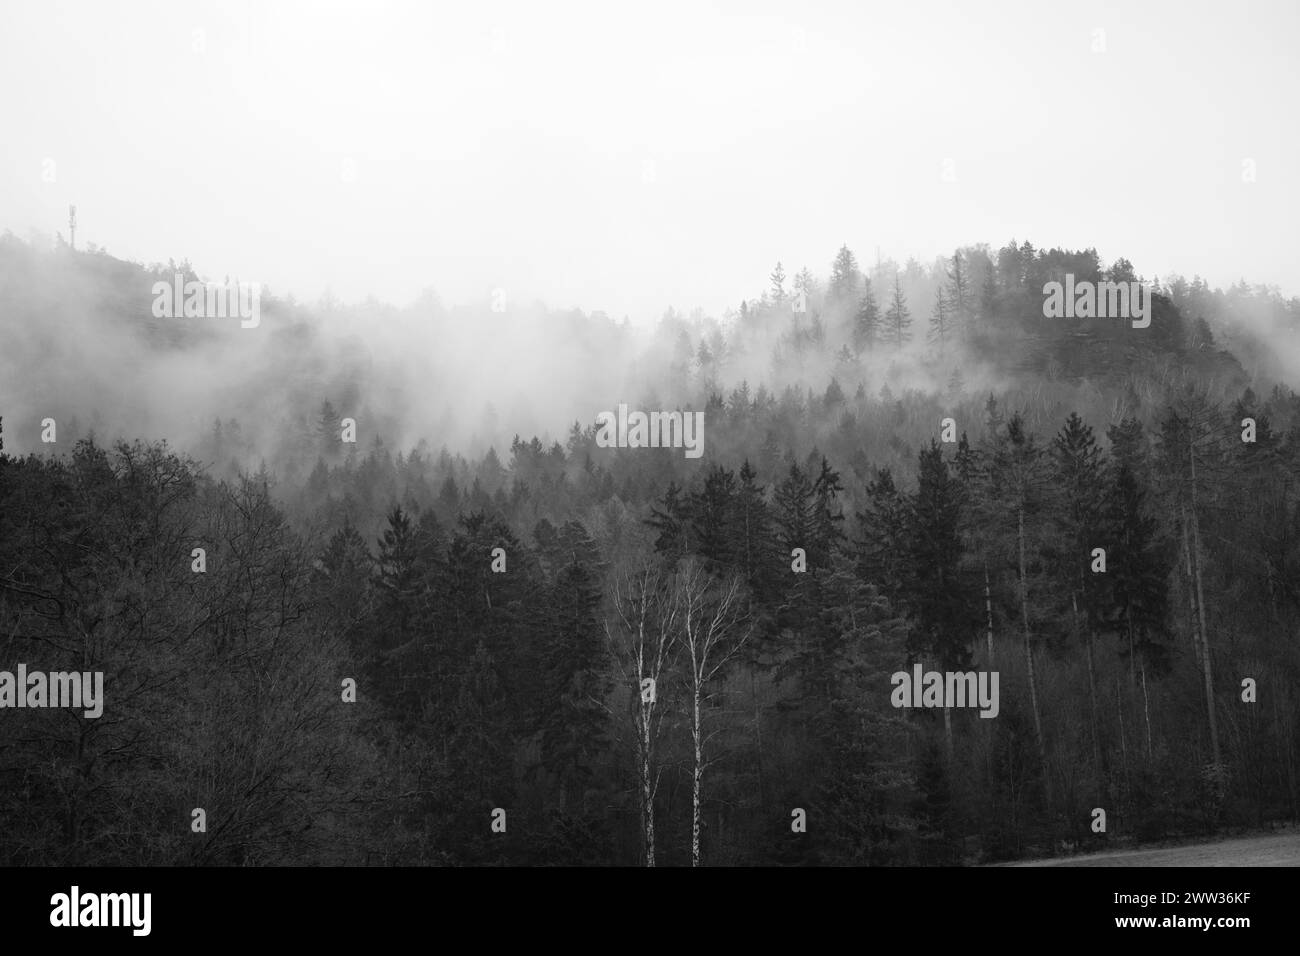 Bosque niebla en una montaña en las montañas de piedra arenisca del Elba en blanco y negro. Ambiente sombrío entre abetos. Paisaje de Alemania Foto de stock